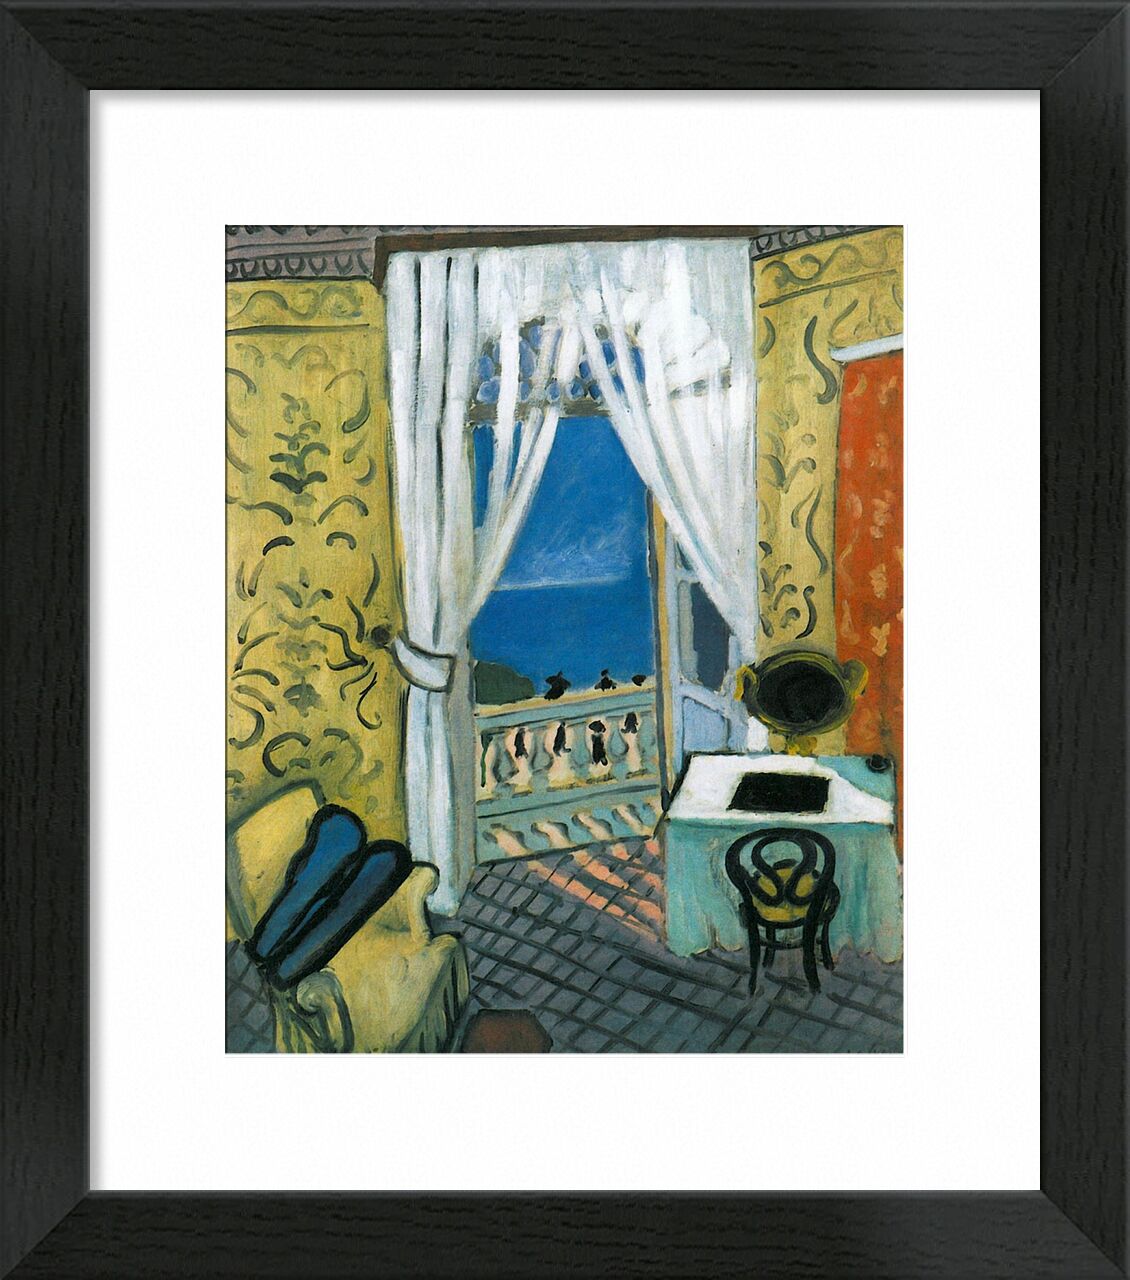 Still Life with Violin Case - Henri Matisse von Bildende Kunst, Prodi Art, Matisse, Violine, Musik, Meer, Fenster, Wohnzimmer